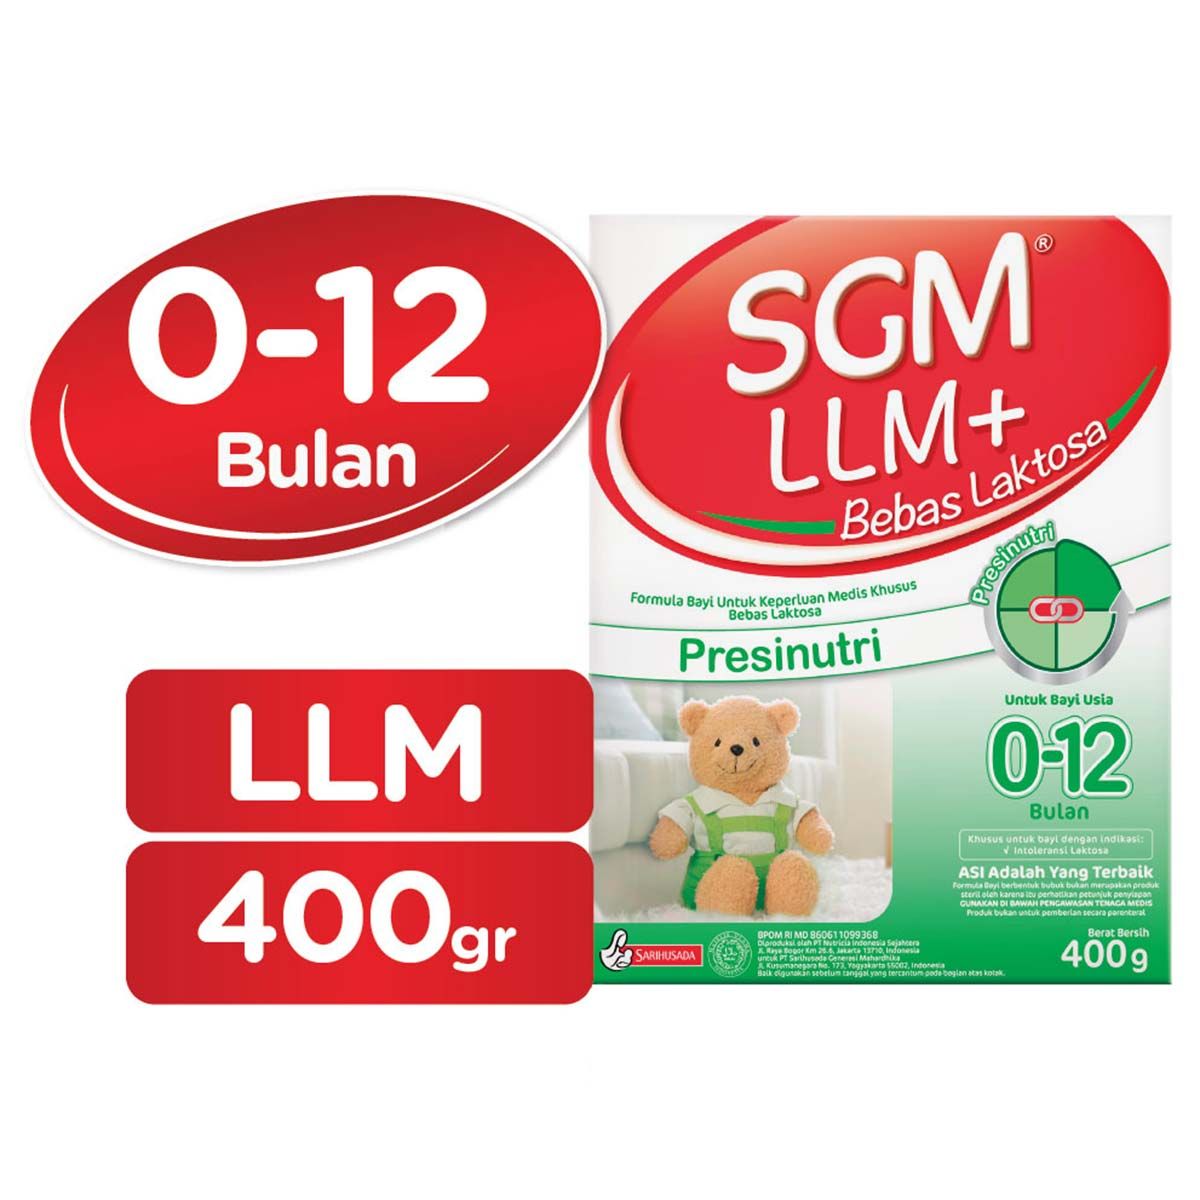 SGM LLM+ Presinutri 400gr Box - 2